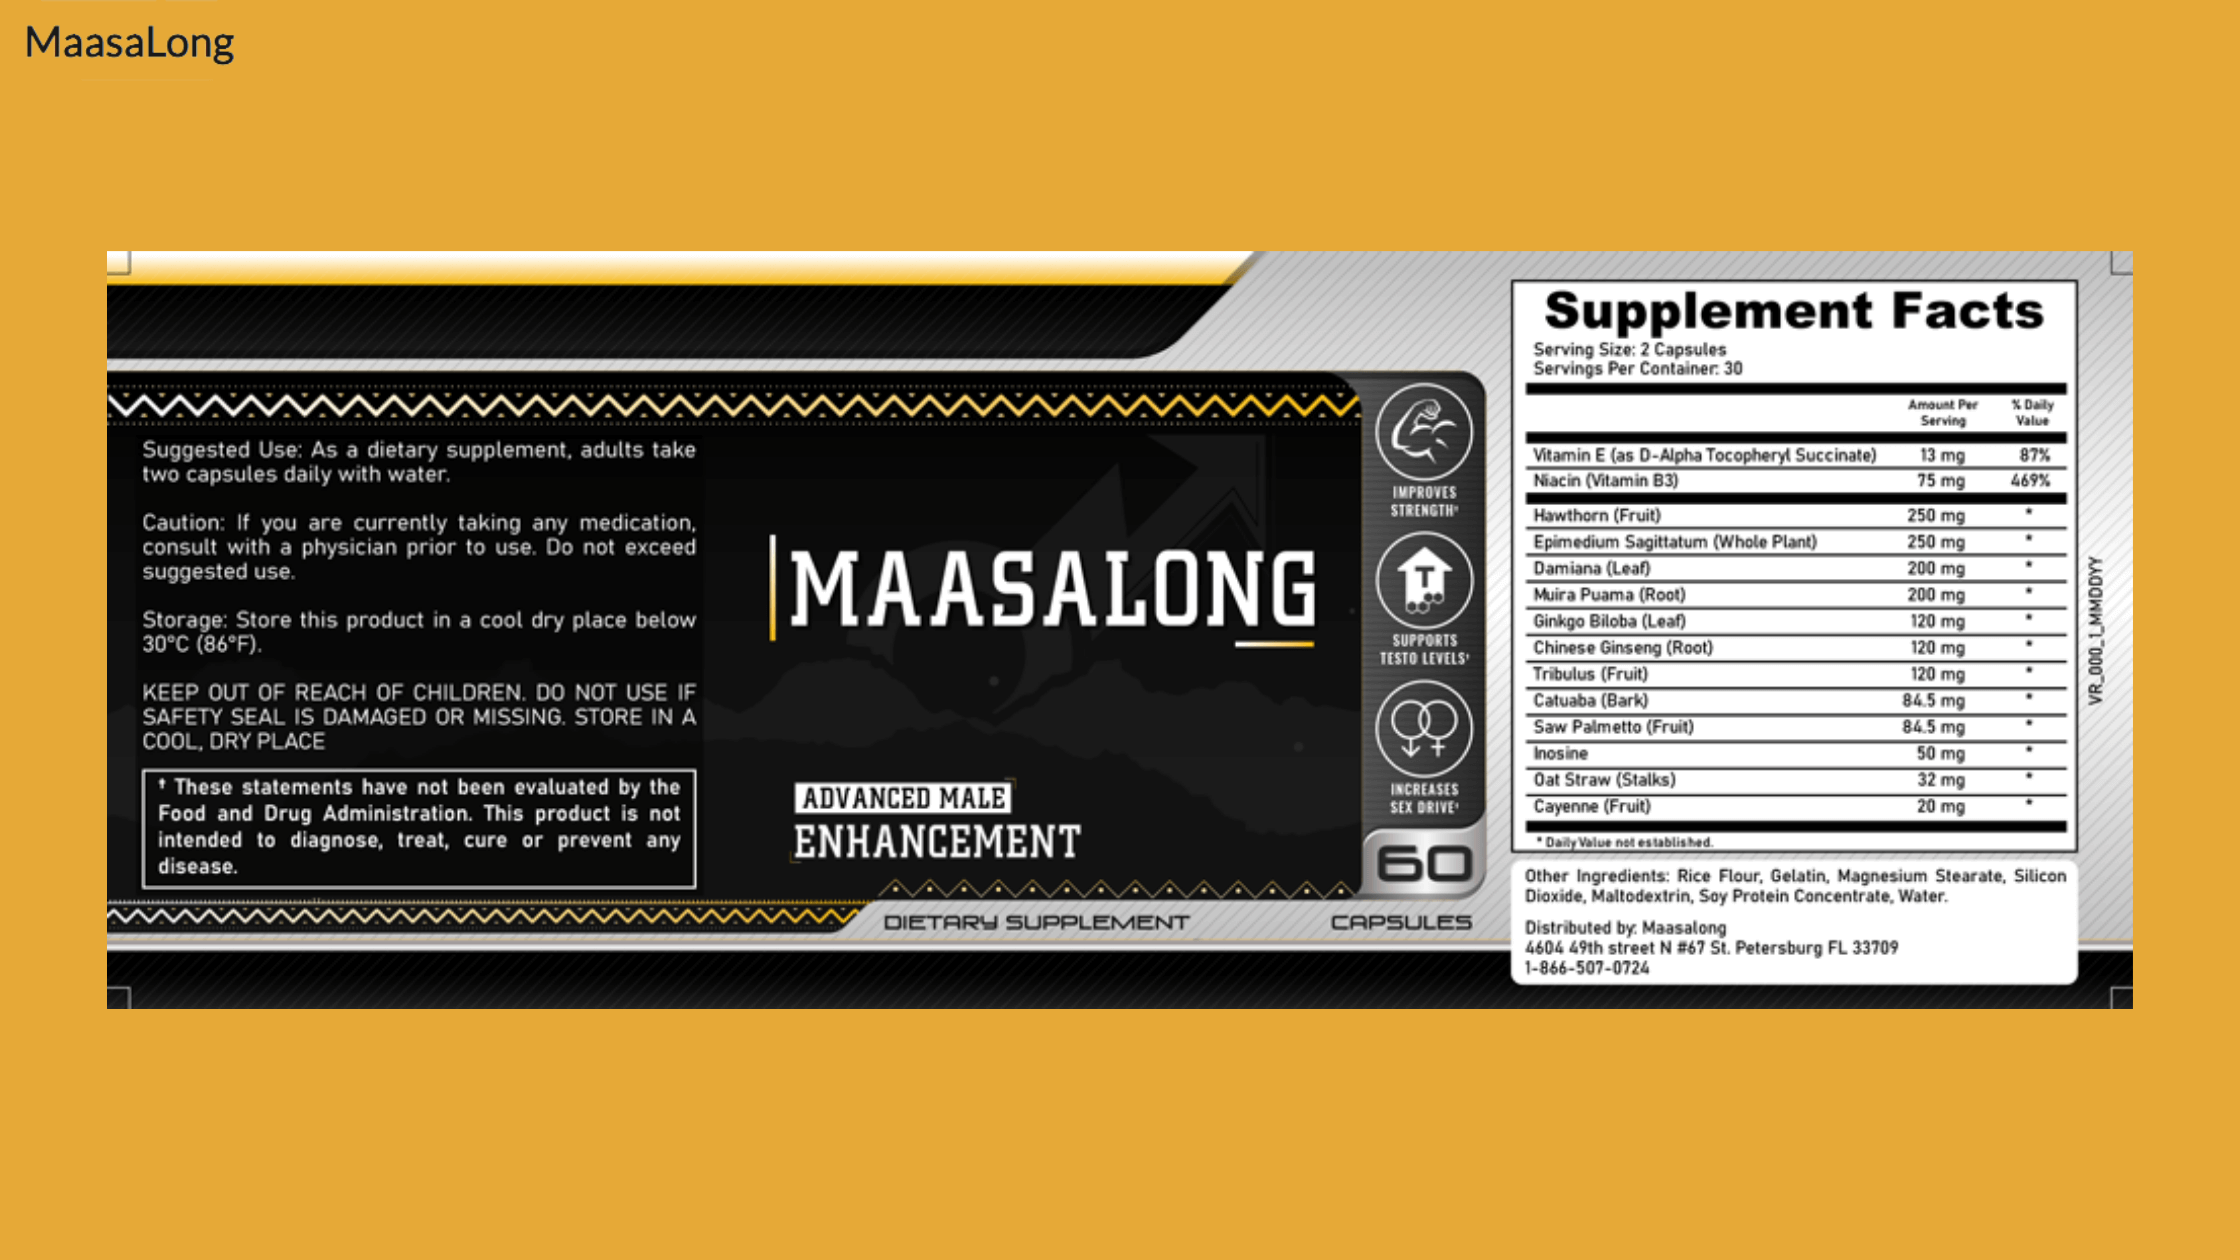 MaasaLong supplement facts